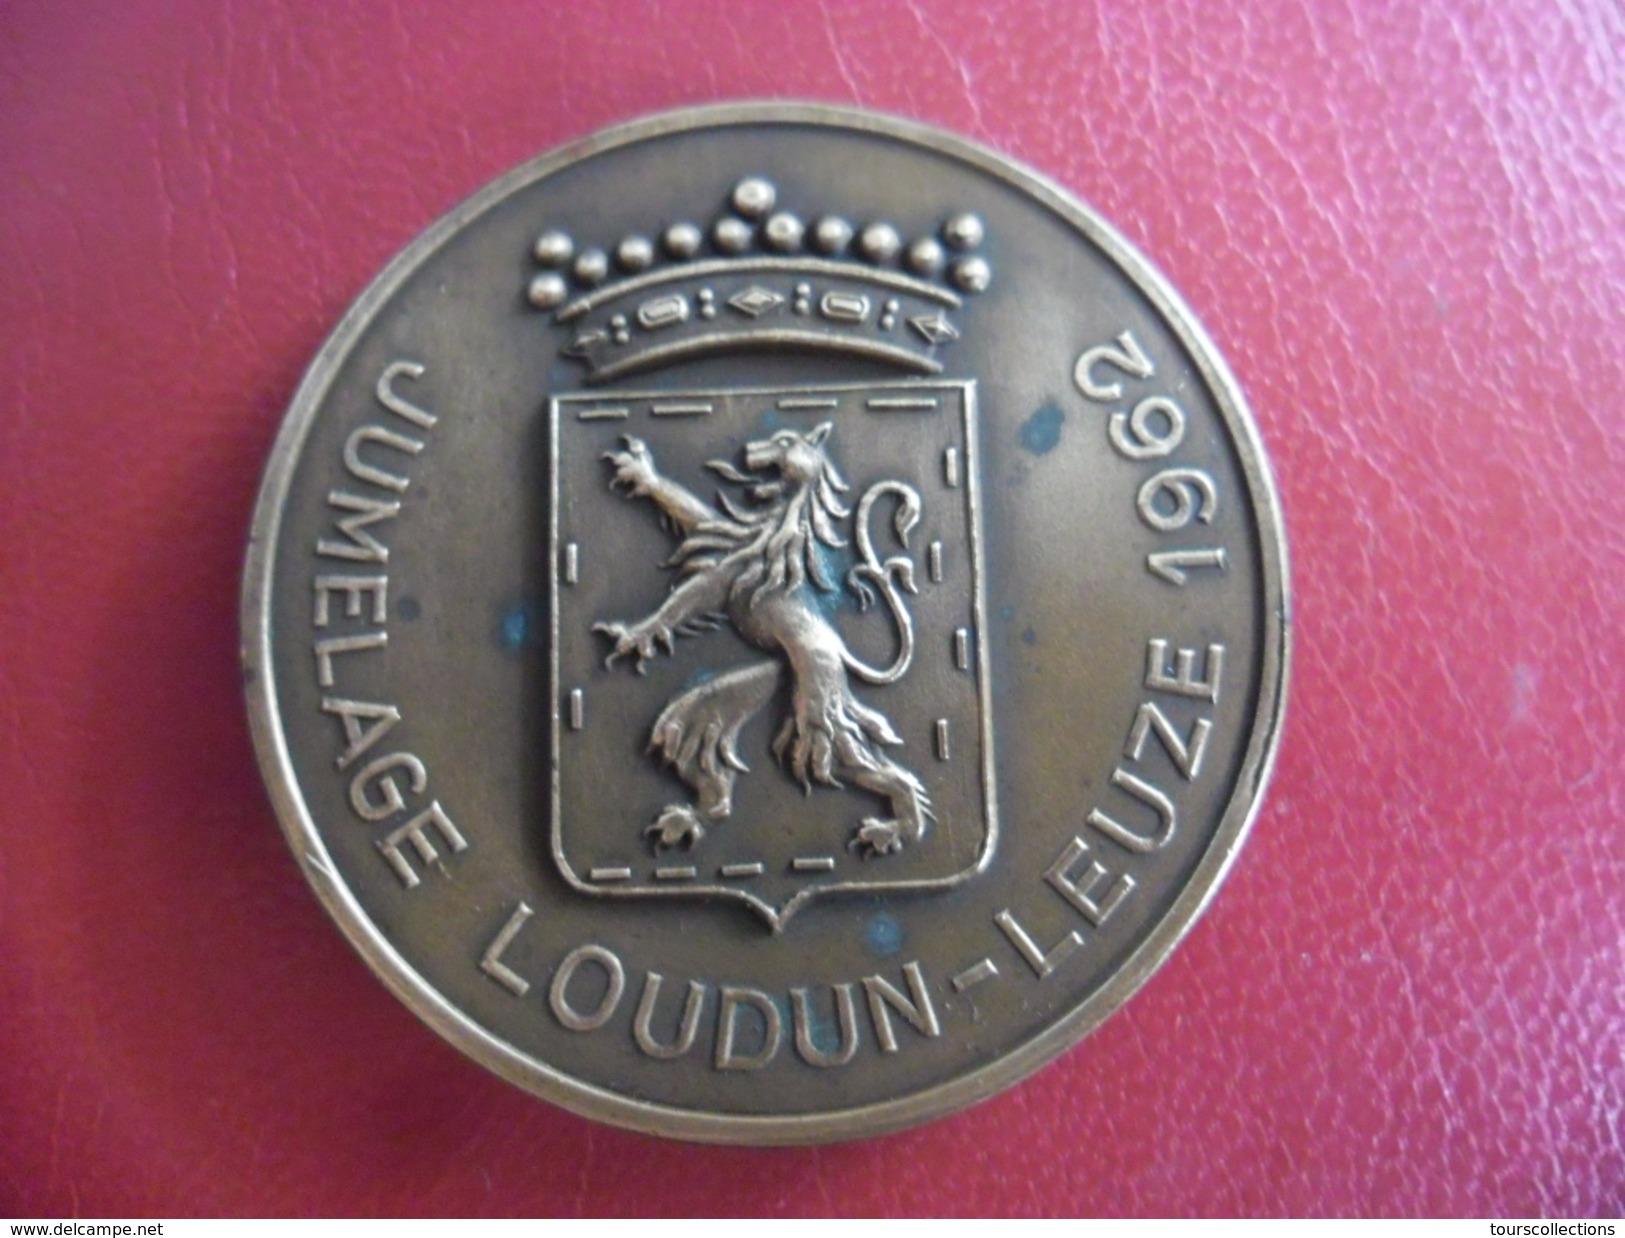 MEDAILLE De Bronze Jumelage LOUDUN - LEUZE 1962 @ 51 Mm Pour 55 Gr. H. Daumerie Centre De Bonneterie @ Lion Héraldique - Professionali / Di Società